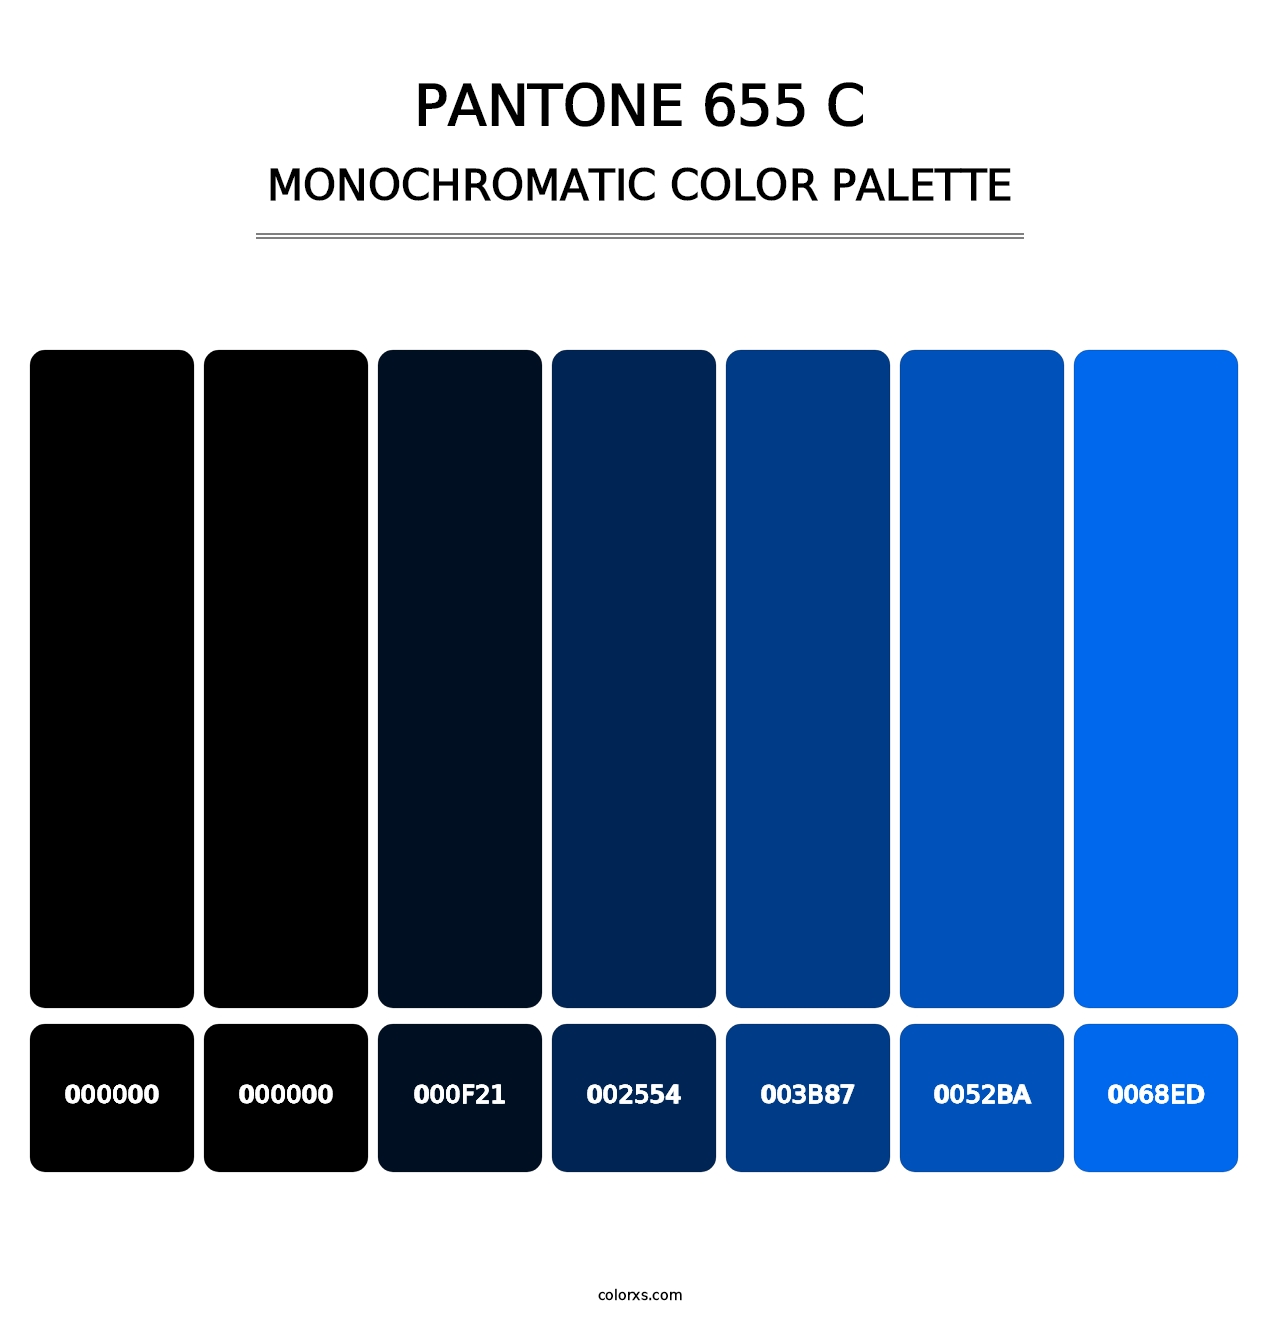 PANTONE 655 C - Monochromatic Color Palette